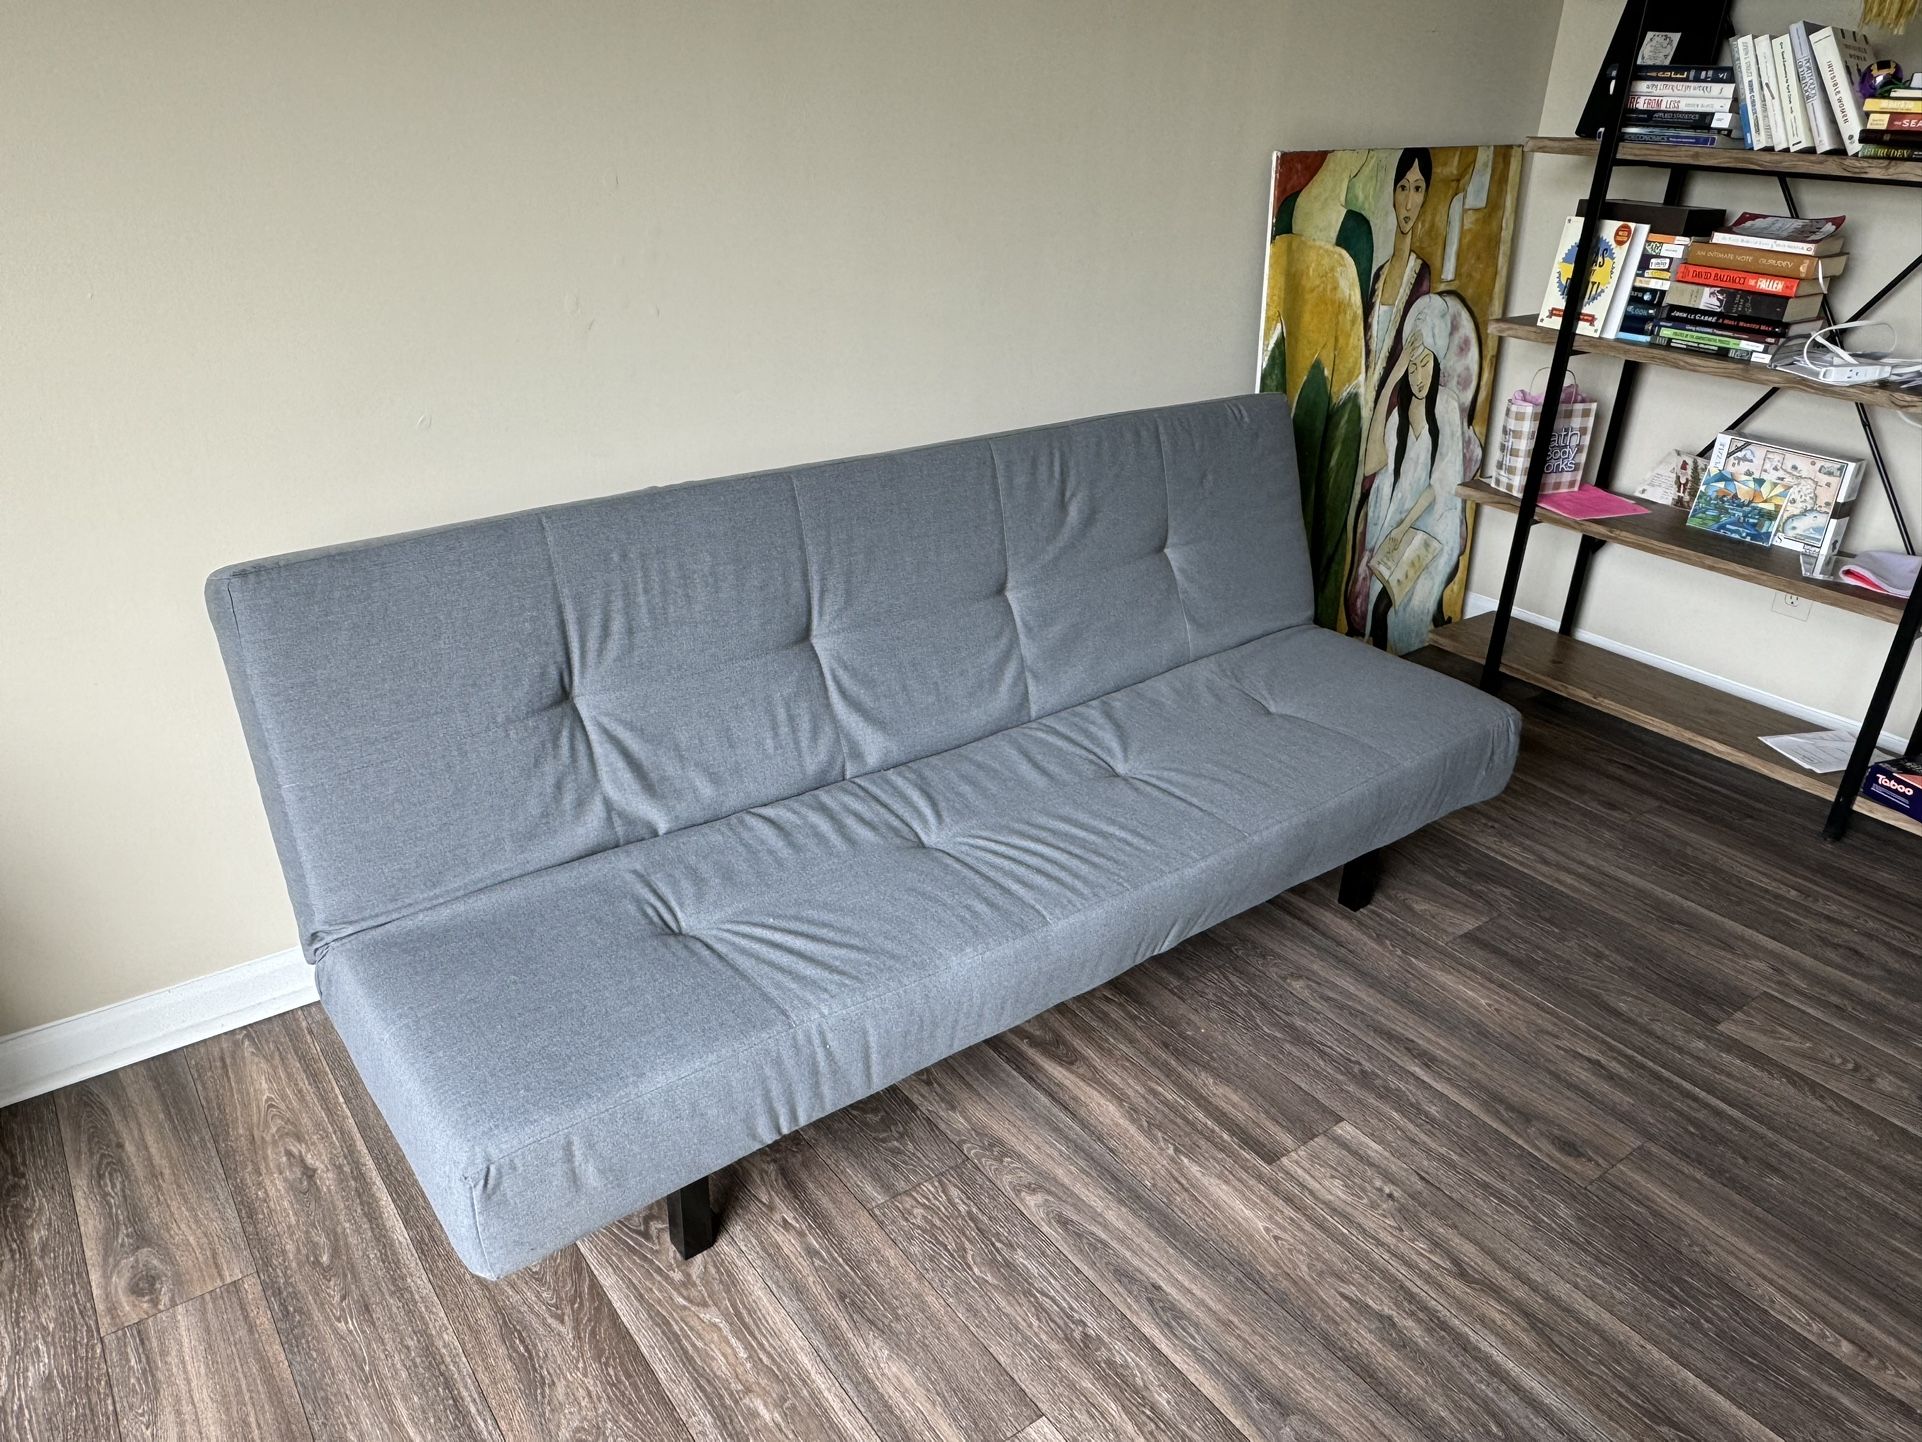 Sleeper Sofa (IKEA)